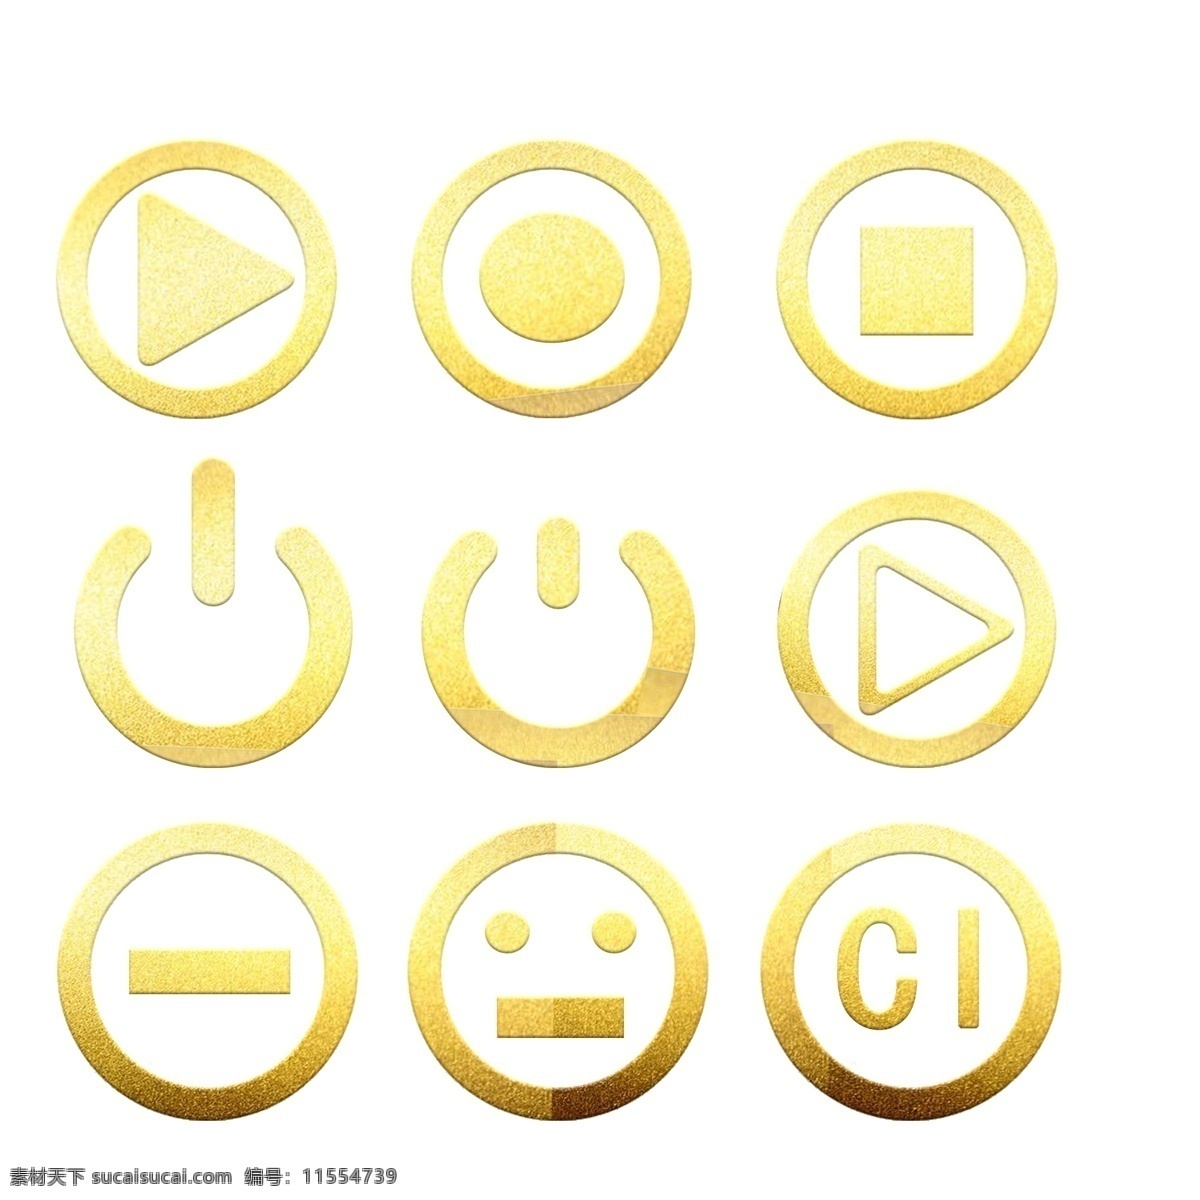 金箔 按钮 元素 金色 烫金 花纹 免 抠 图 质感 金属 金砂 高清免抠 可分开使用 下载图标